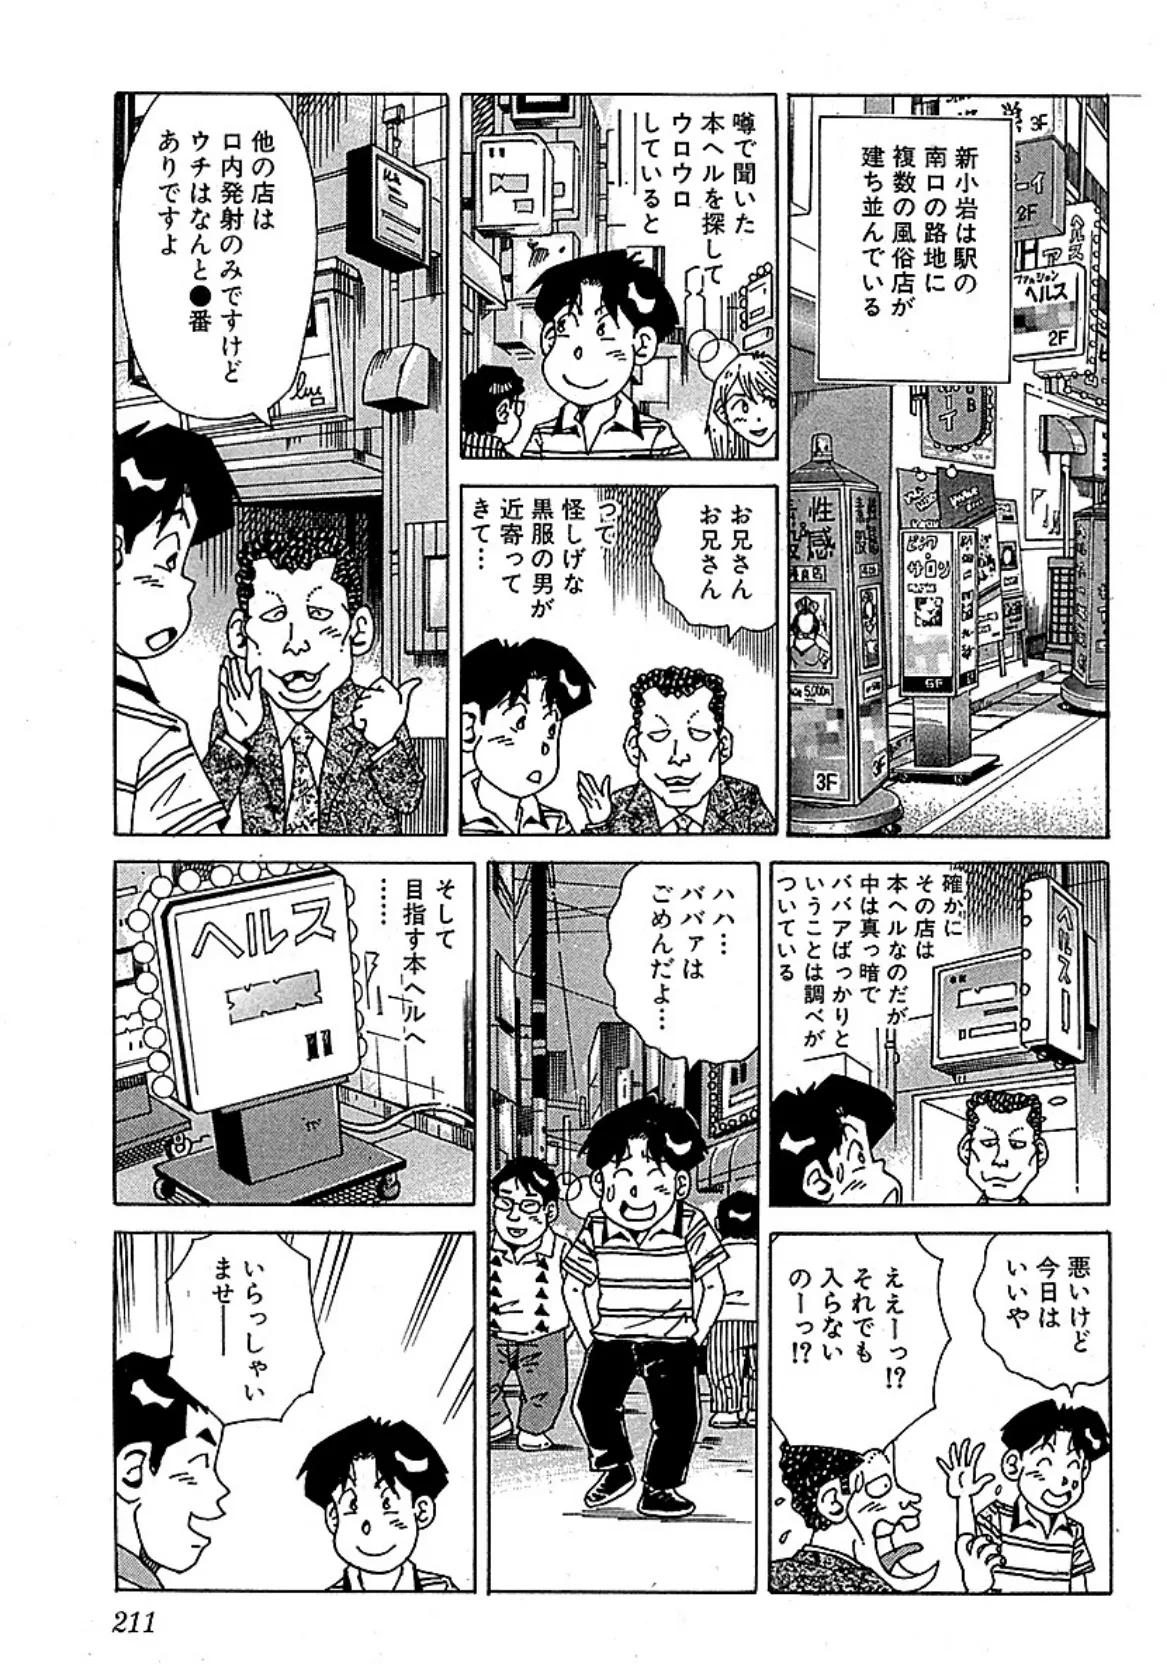 山崎大紀の本当にあったHな話 三行広告スペシャル 分冊版 5 4ページ